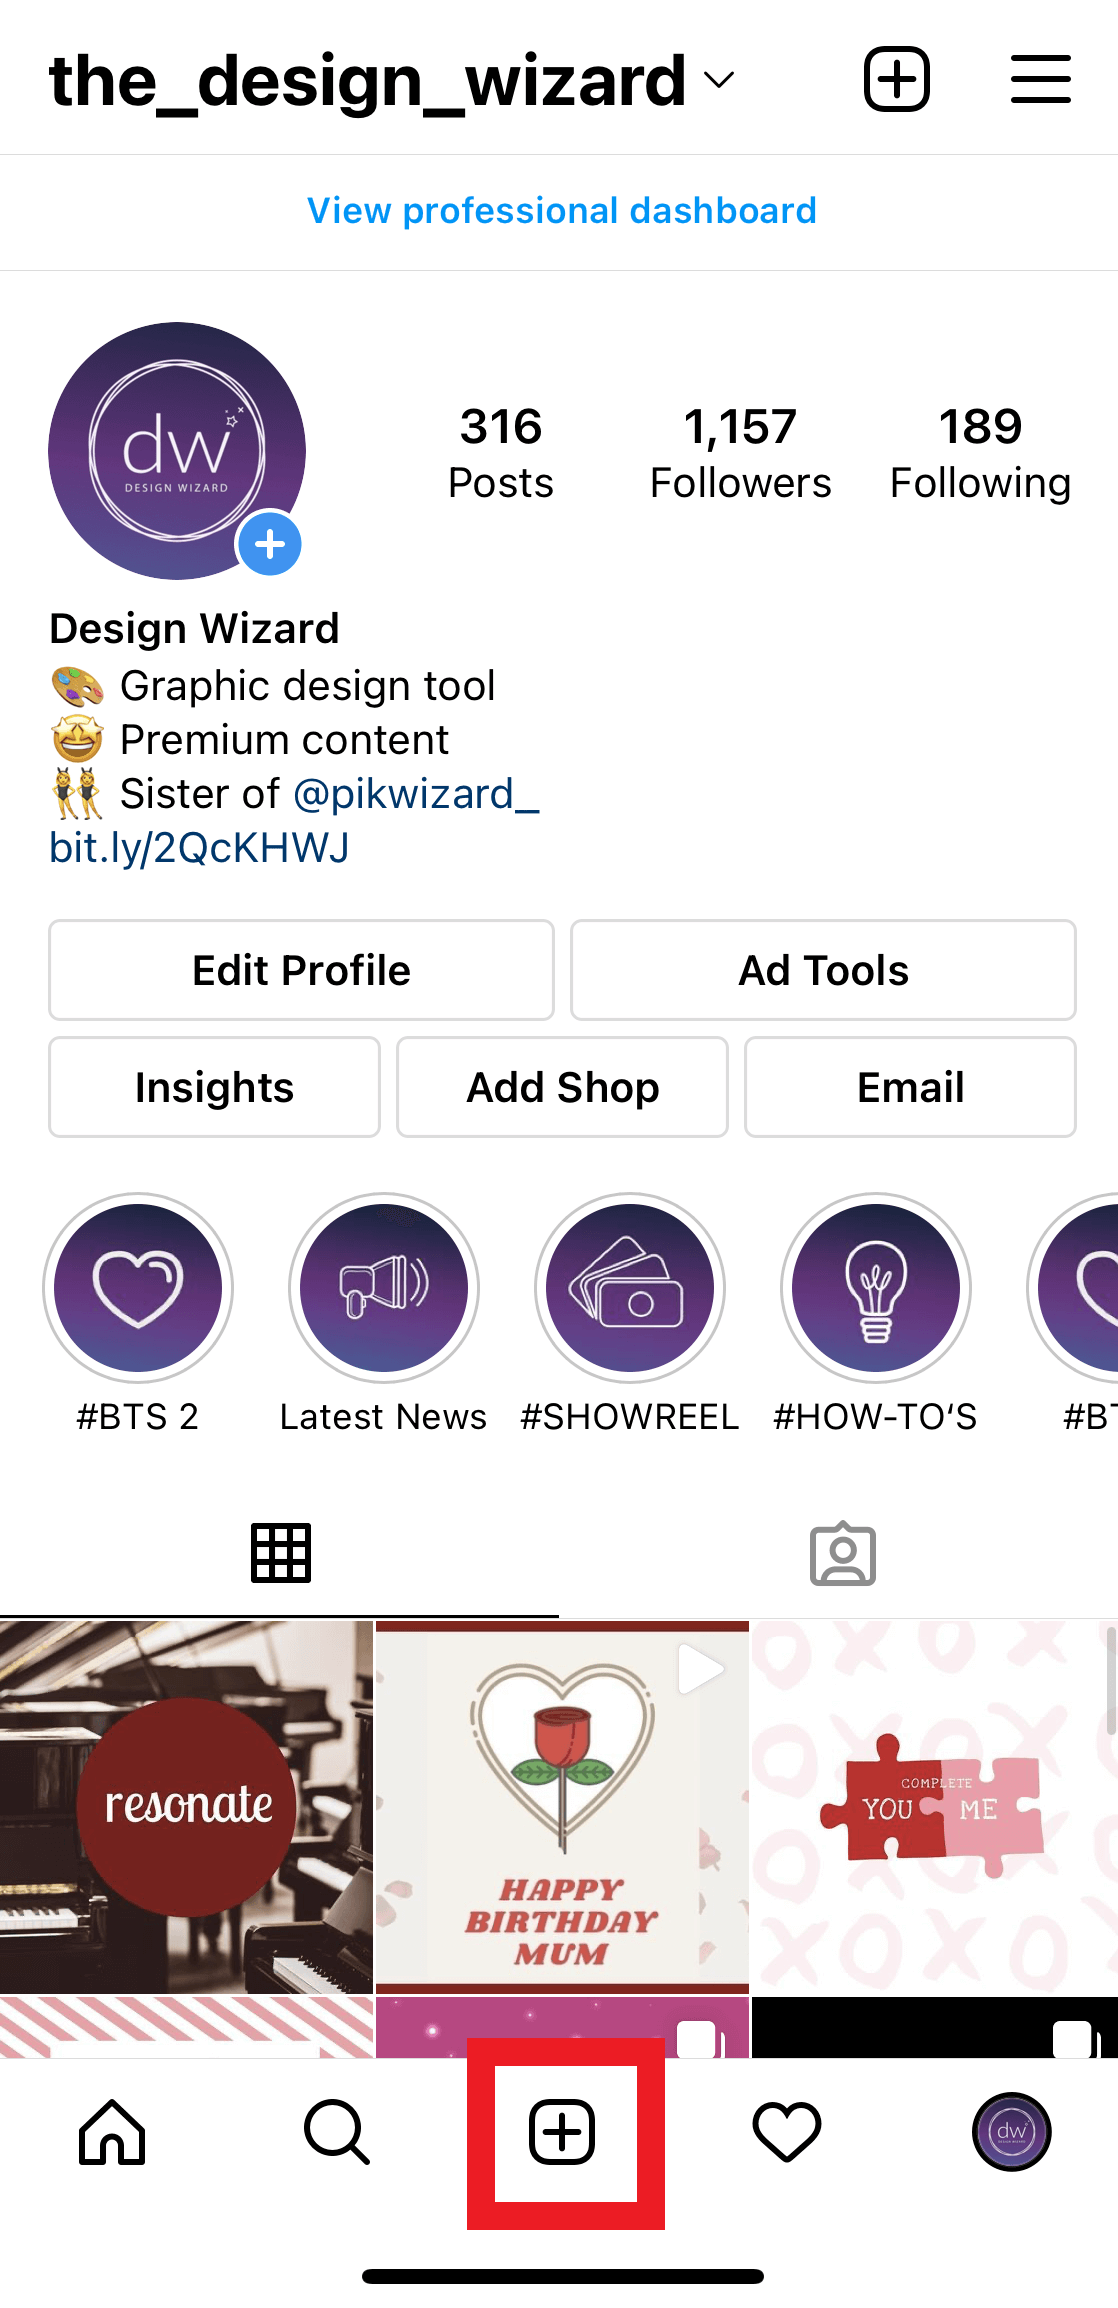 Design Wizard Instagram-Seite - Wie man ein Foto auf Instagram hochlädt - Bild